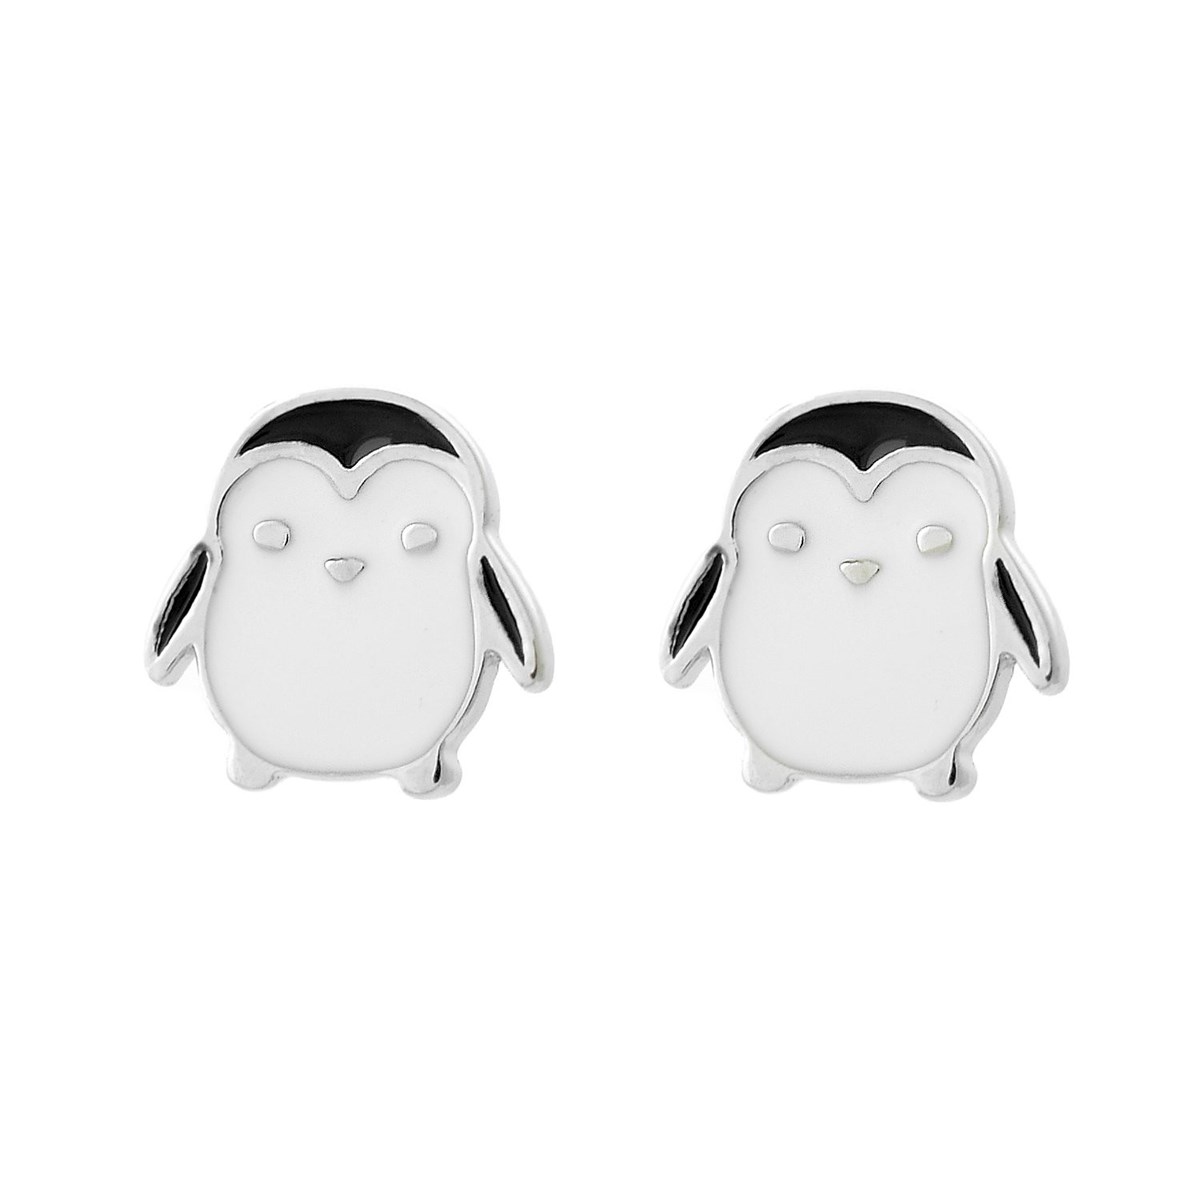 Boucles d'oreilles pingouin émail coloré blanc et noir Argent 925 Rhodié